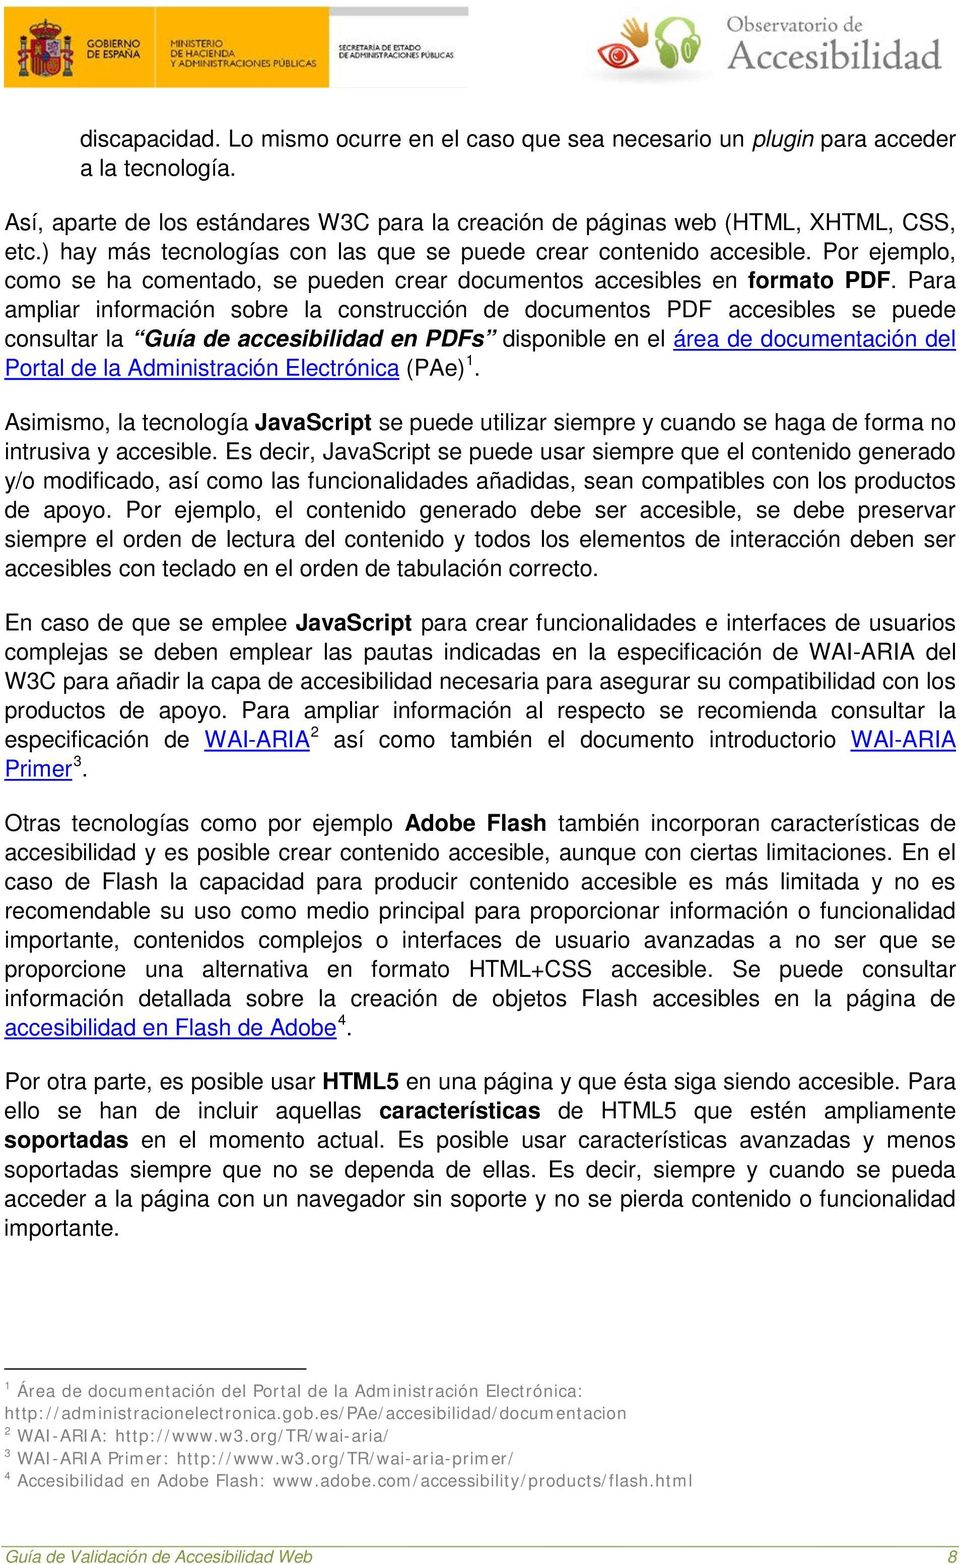 Para ampliar información sobre la construcción de documentos PDF accesibles se puede consultar la Guía de accesibilidad en PDFs disponible en el área de documentación del Portal de la Administración